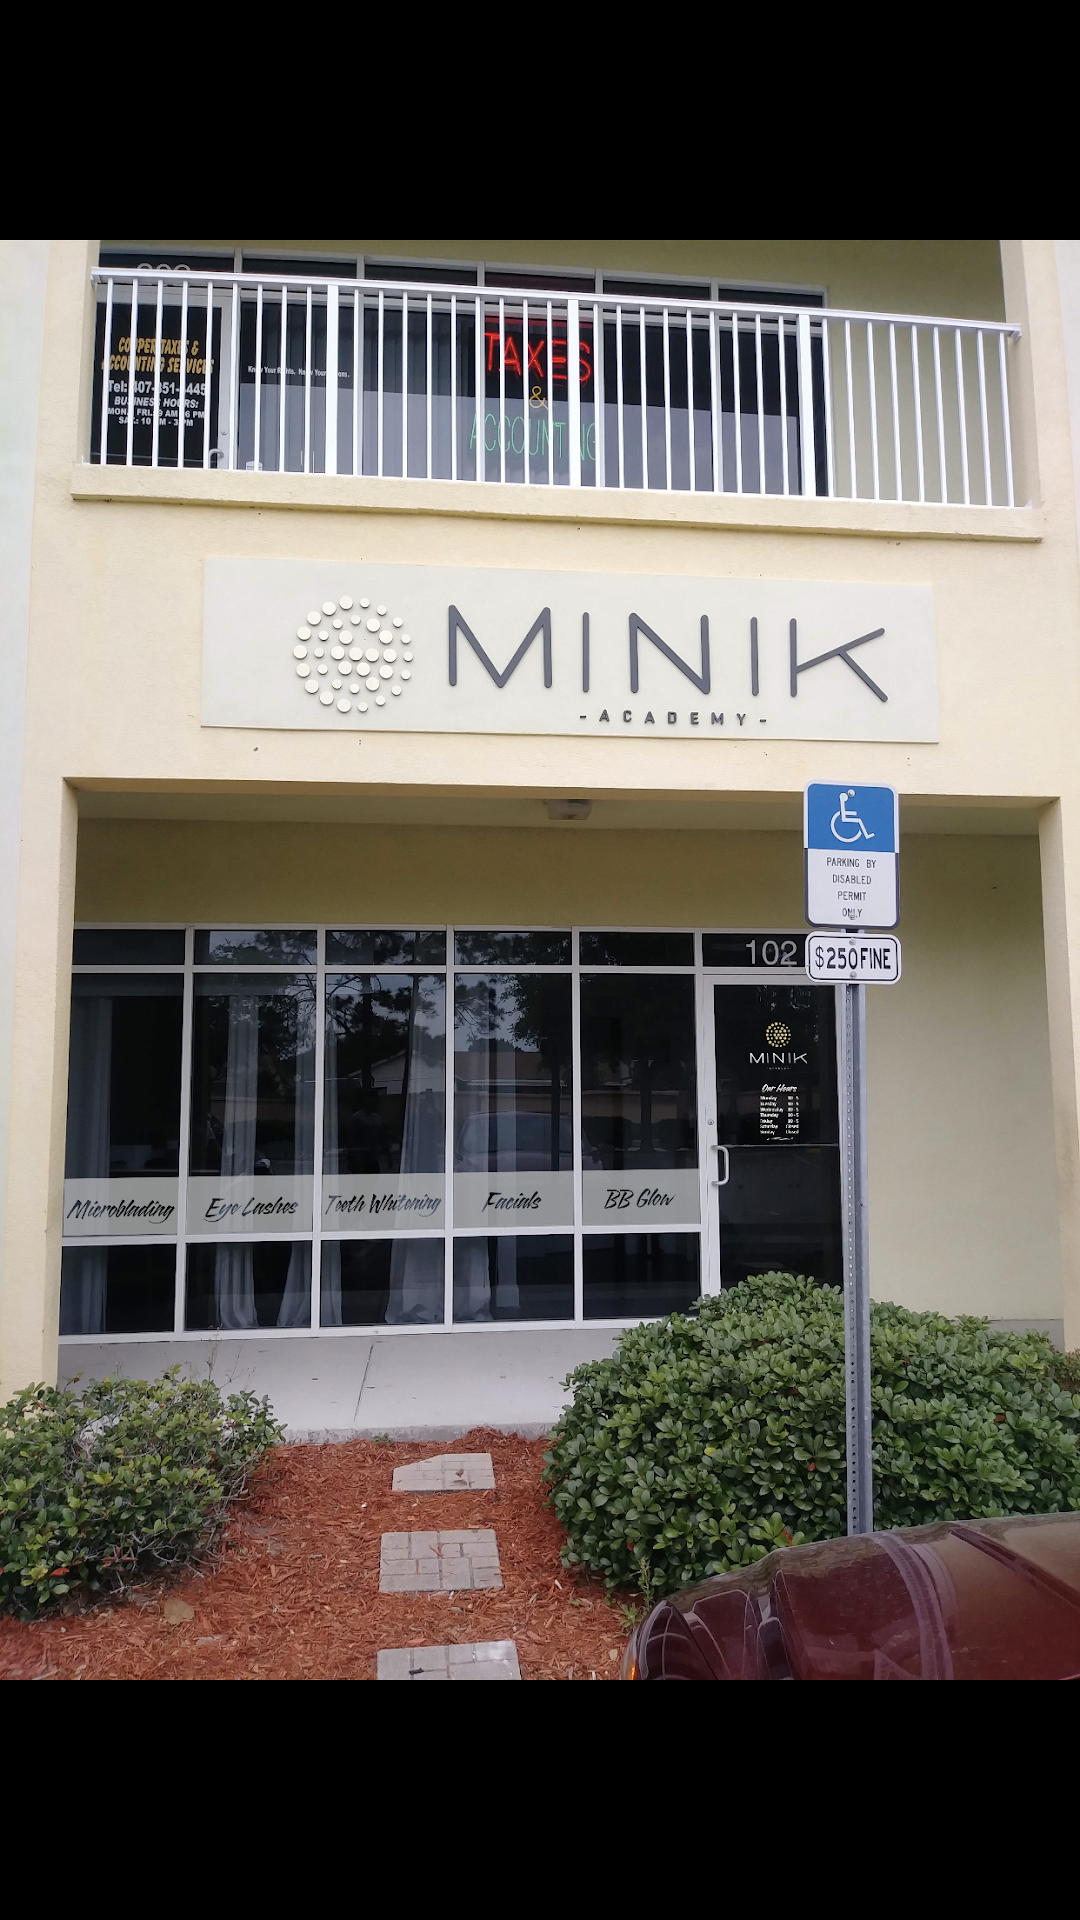 MINIK academy